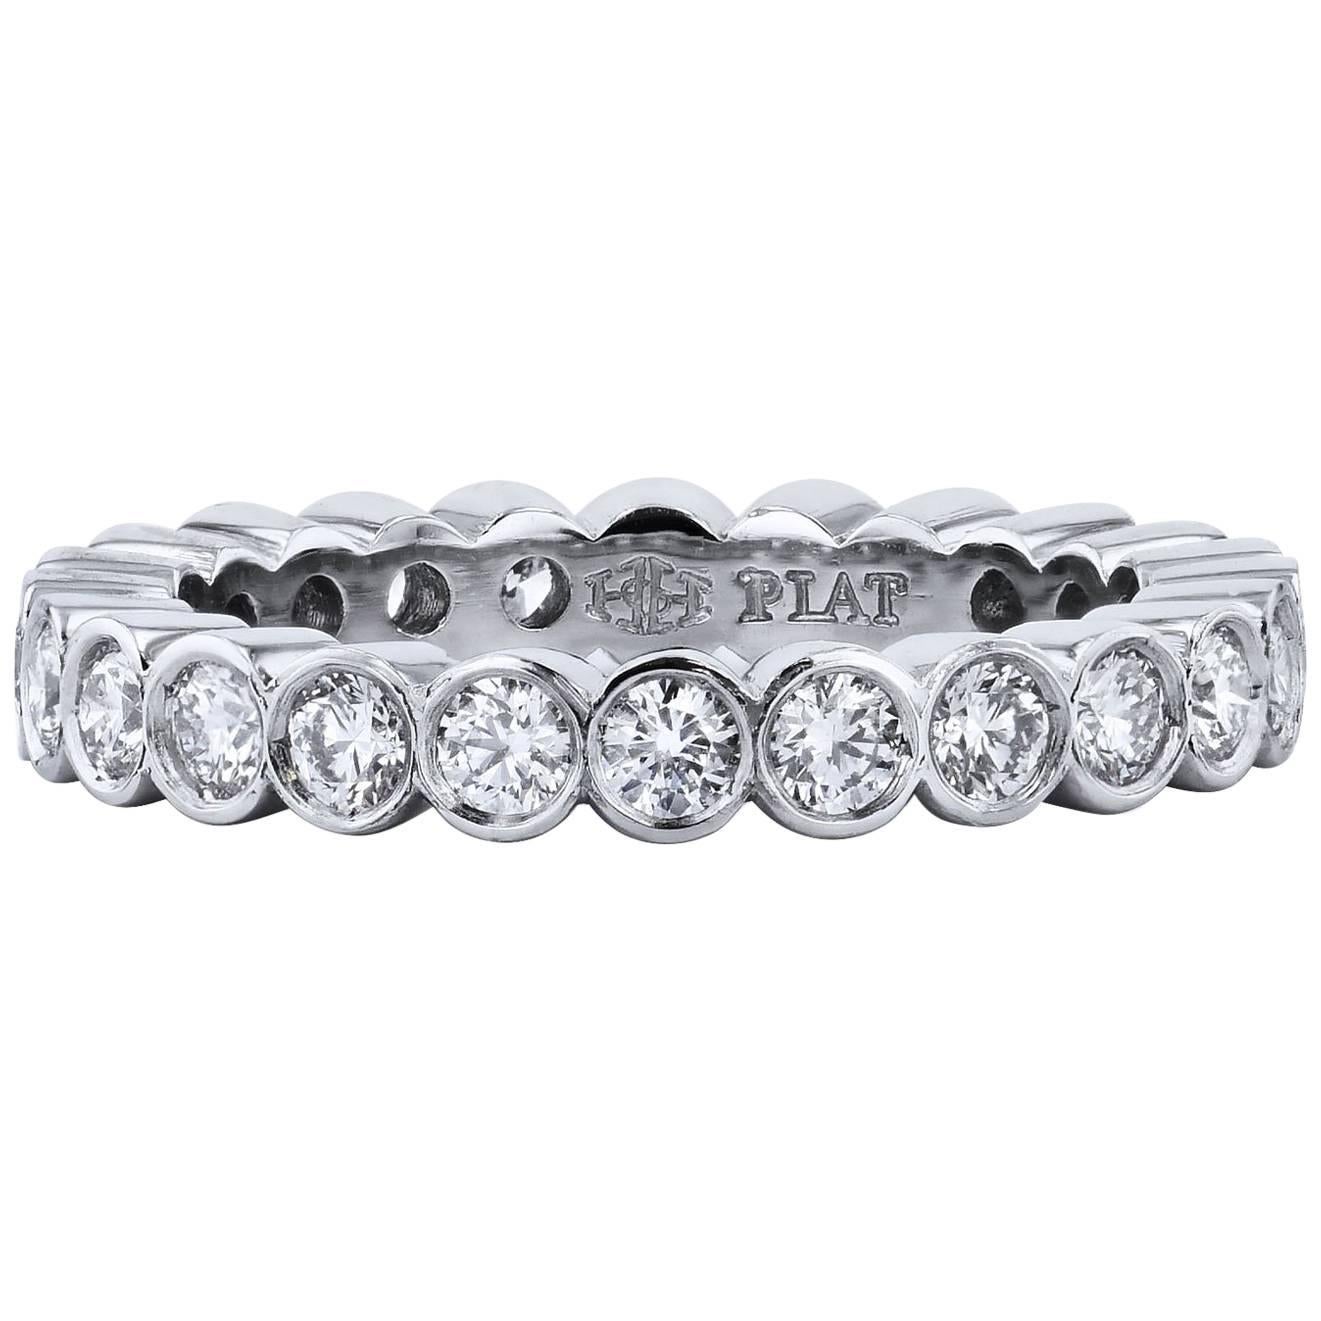 H & H 1.11 Carat Diamond Band Ring